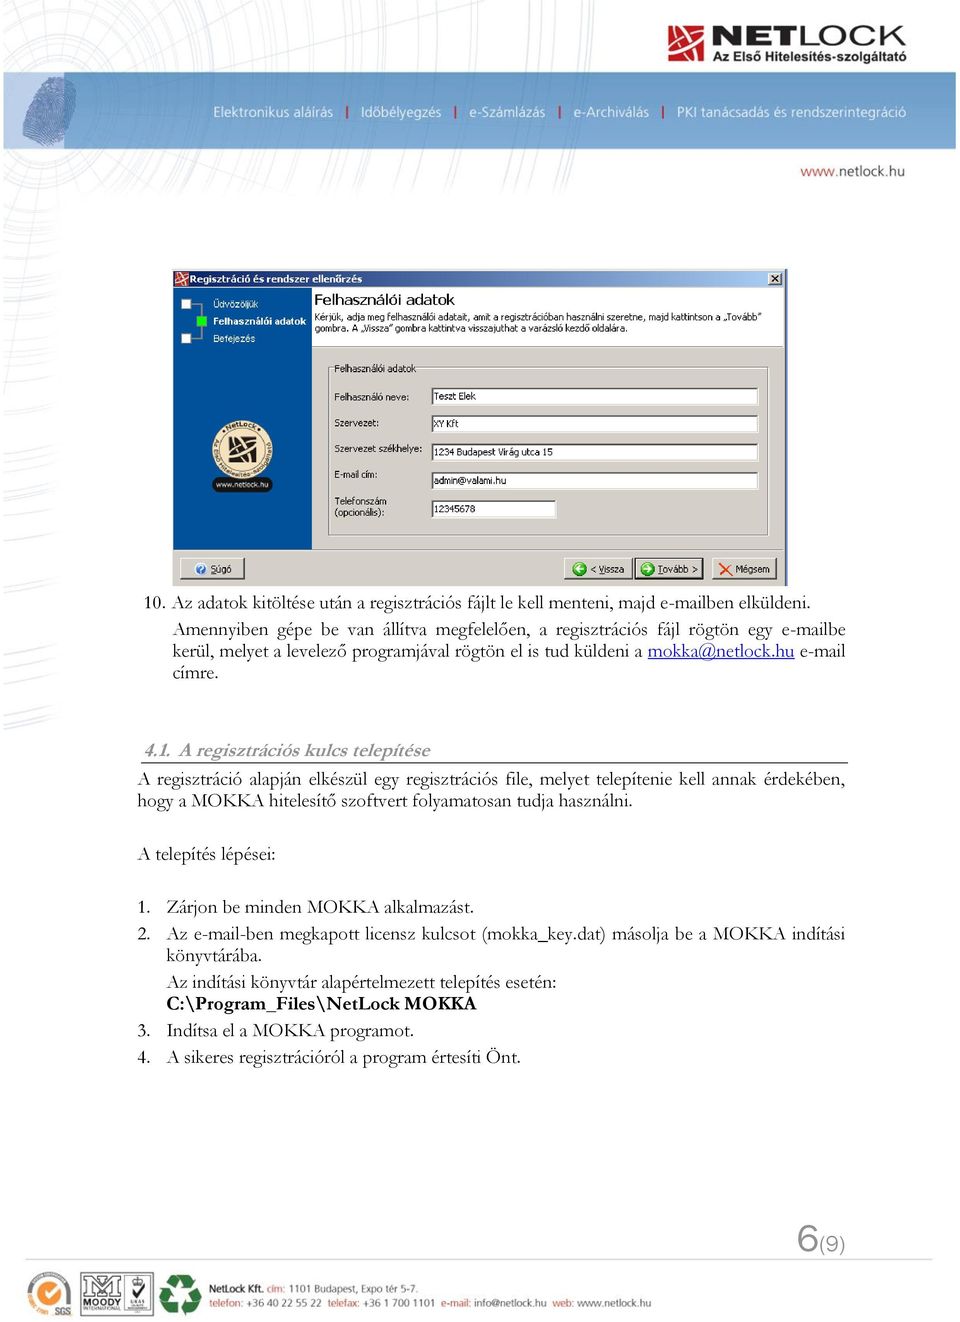 A regisztrációs kulcs telepítése A regisztráció alapján elkészül egy regisztrációs file, melyet telepítenie kell annak érdekében, hogy a MOKKA hitelesítő szoftvert folyamatosan tudja használni.